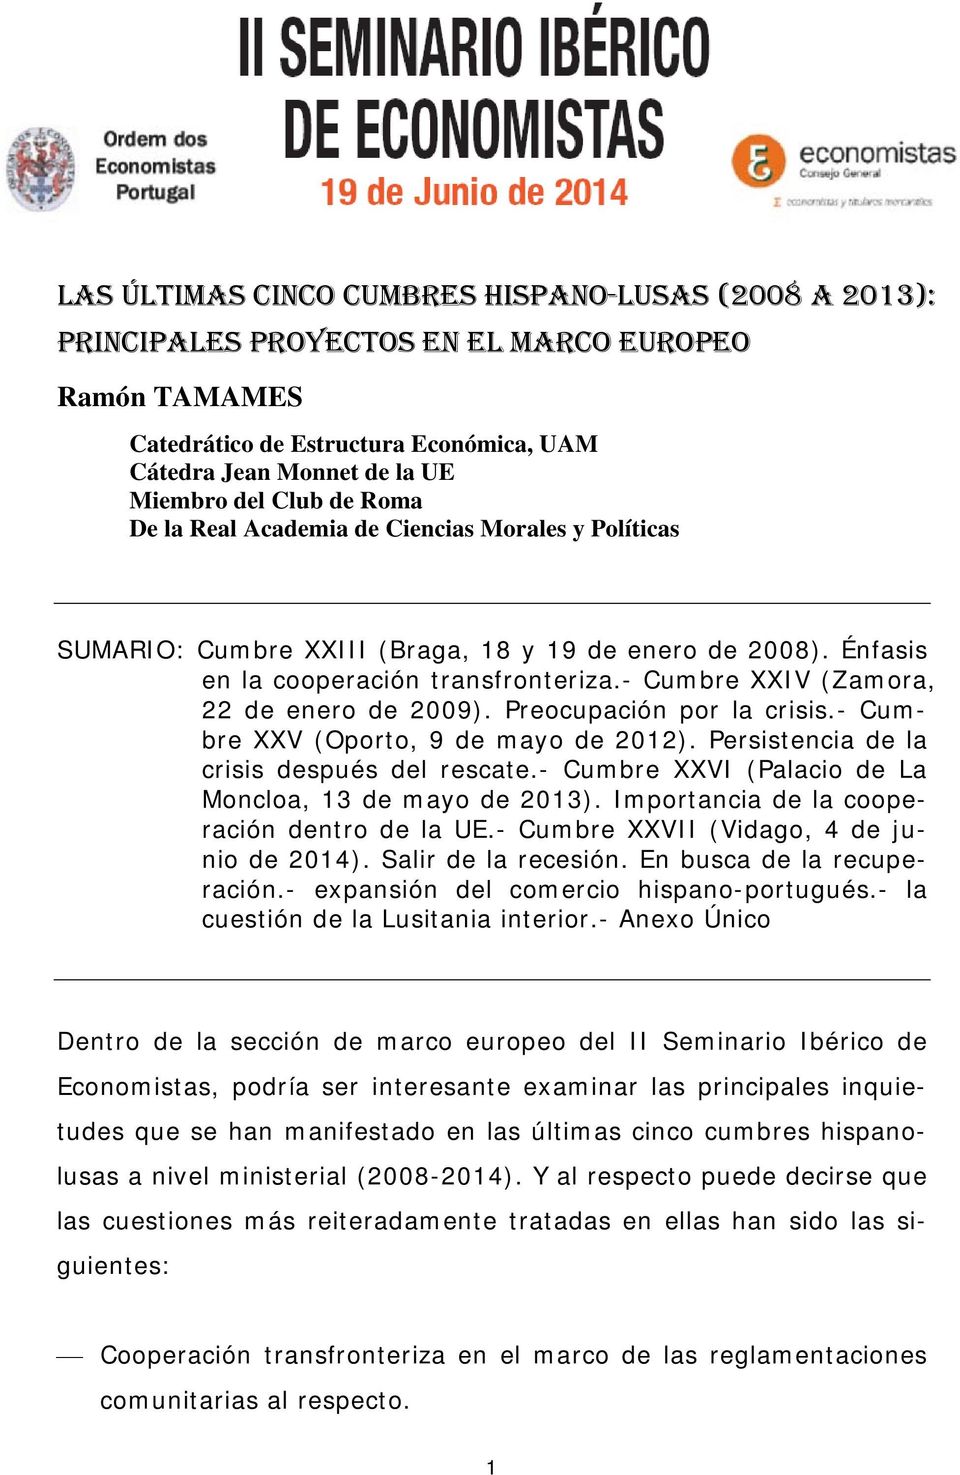 - Cumbre XXIV (Zamora, 22 de enero de 2009). Preocupación por la crisis.- Cumbre XXV (Oporto, 9 de mayo de 2012). Persistencia de la crisis después del rescate.